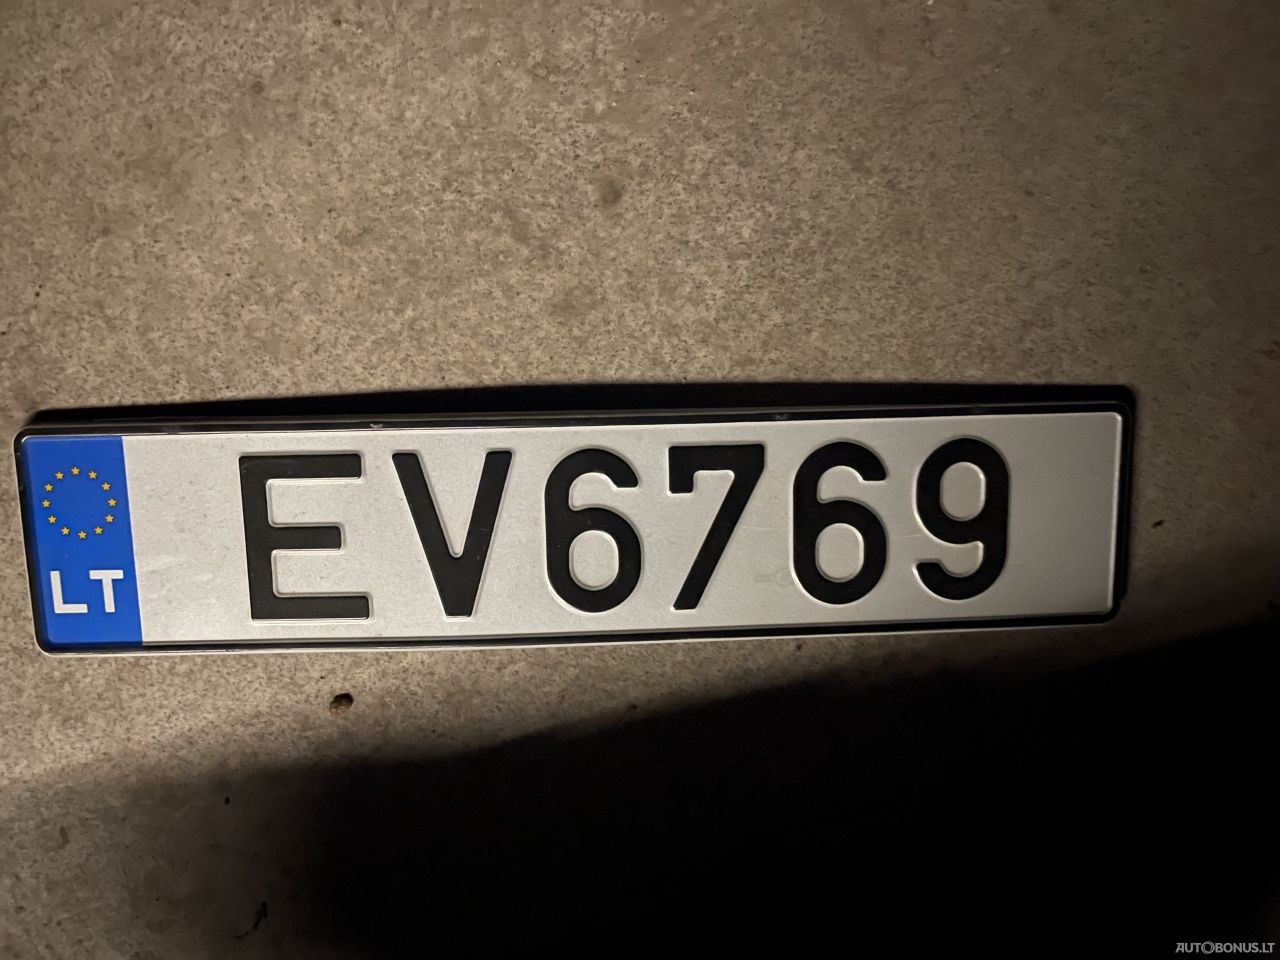  EV6769